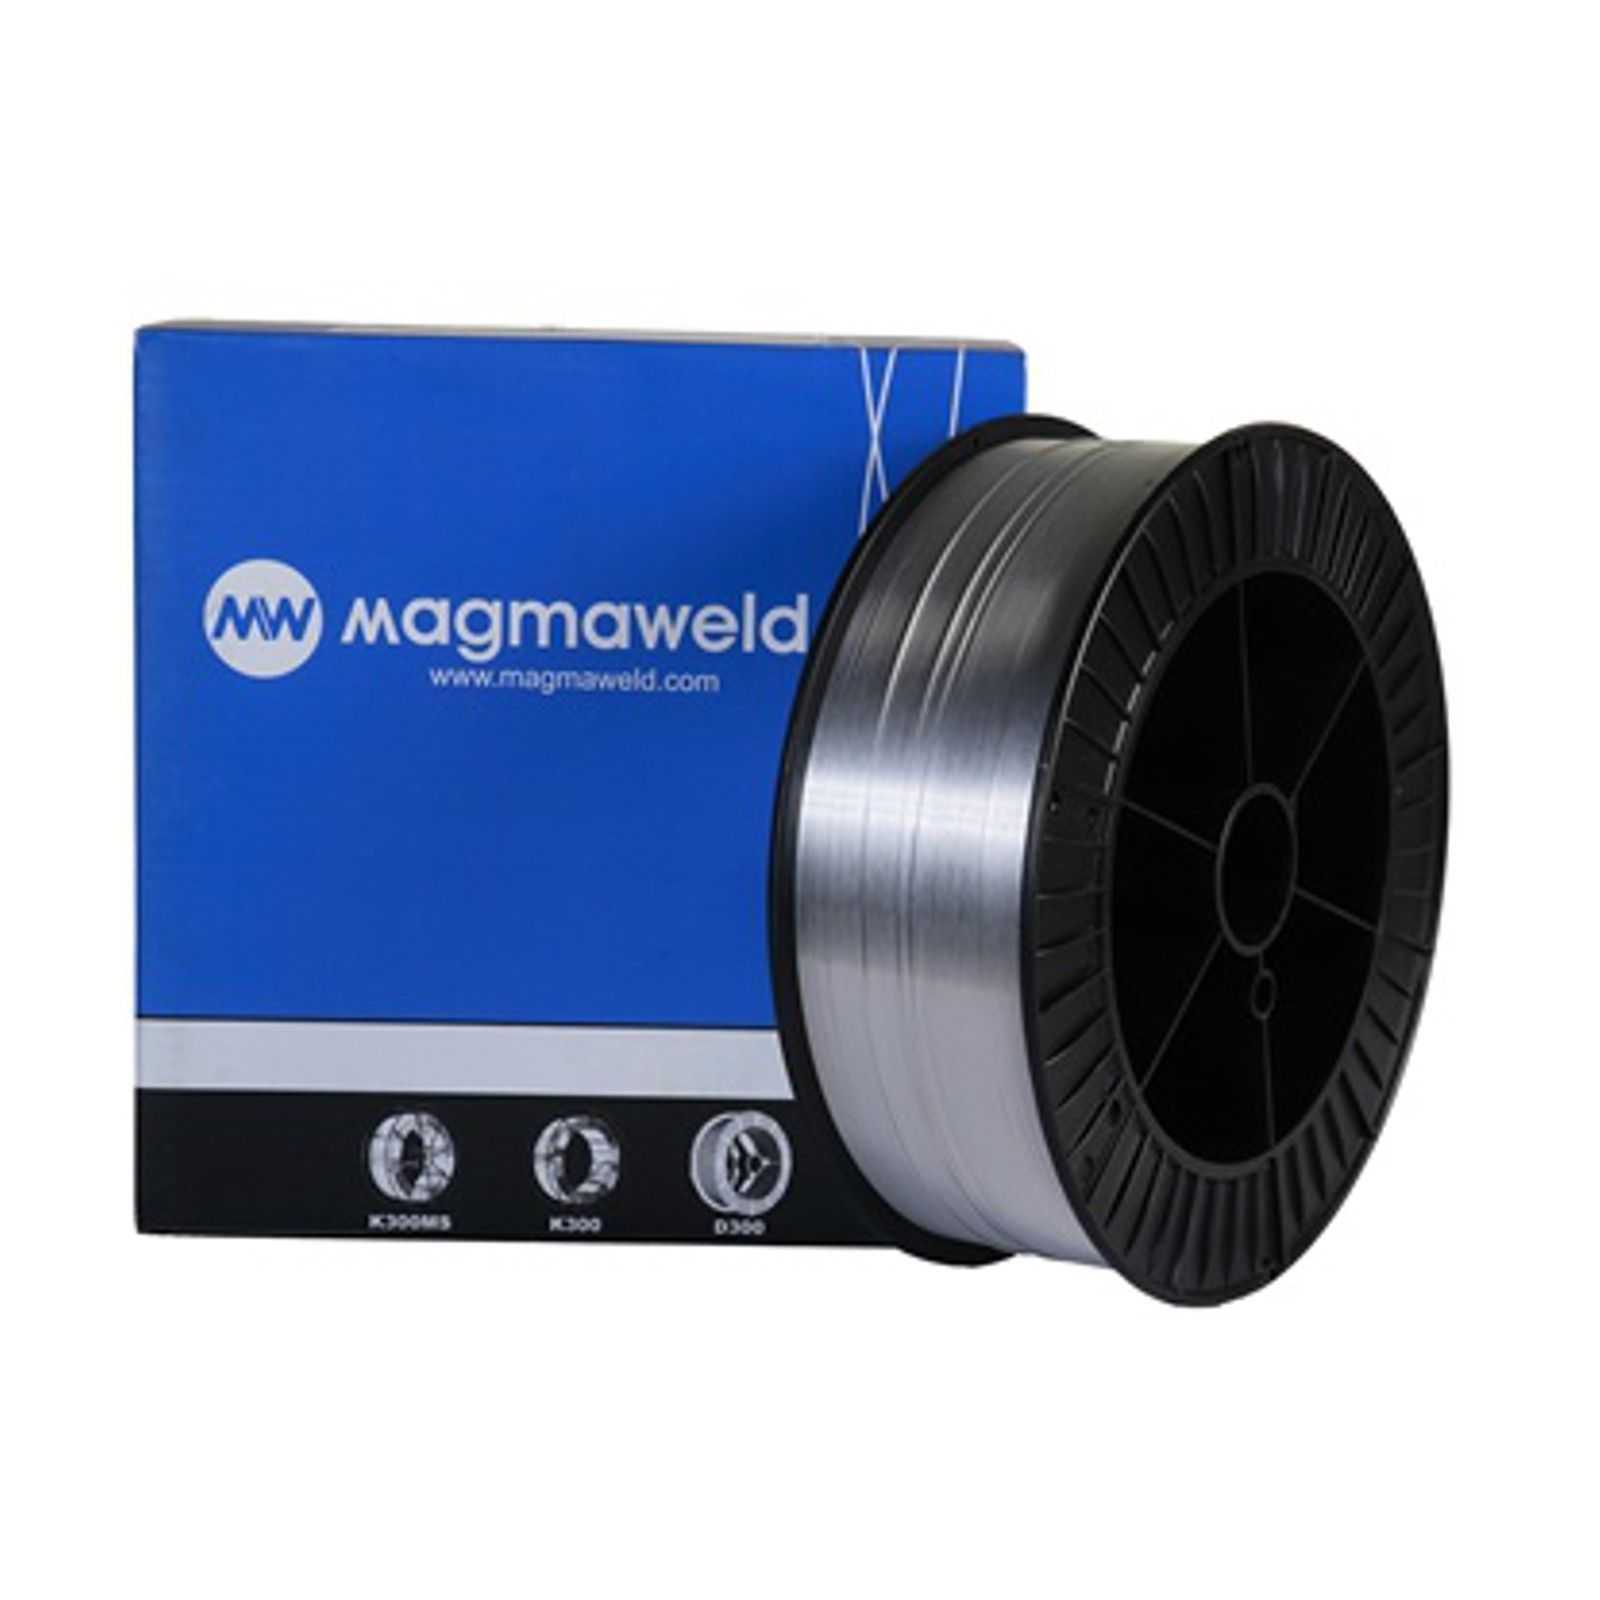 MAGMAWELD AWS 5356 AlMg 5 (3.3556 ) MIG Schweißdraht Aluminium Ø 1,0mm - 2.0 kg (S200 Spule) - 0053561002 -  -  - 45,67 € - 